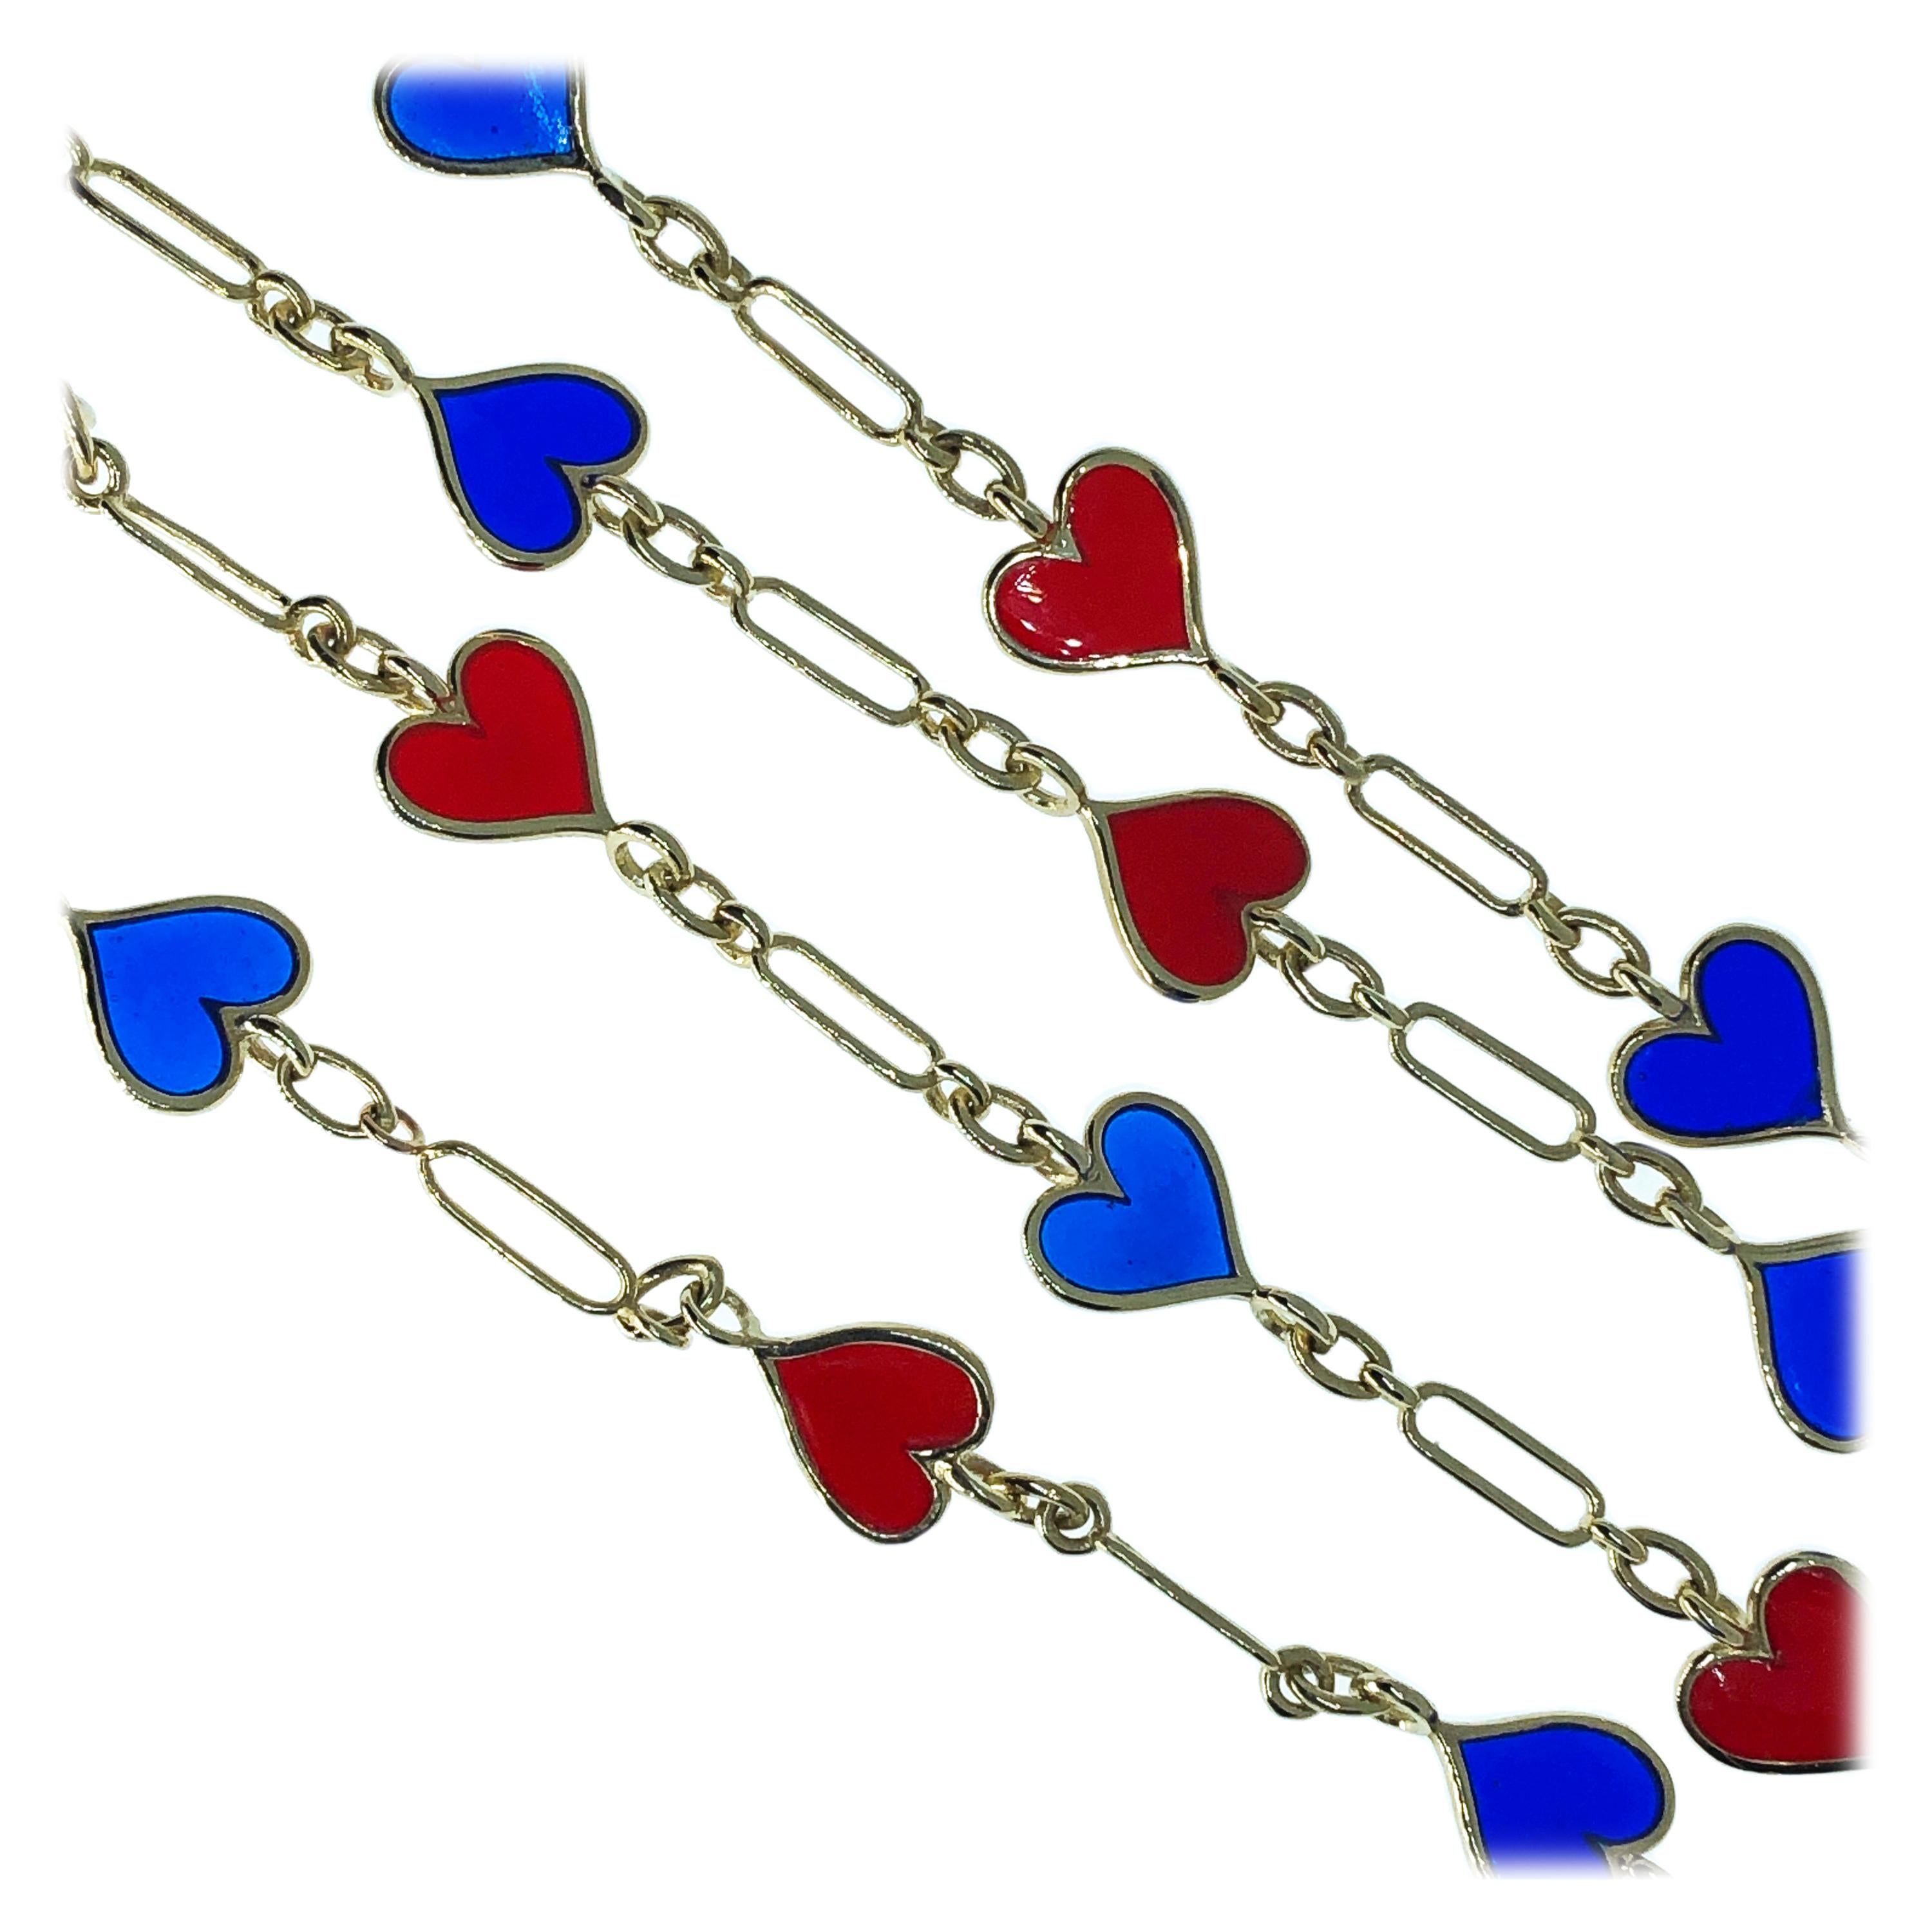 Collier à longue chaîne en forme de cœur, émaillé à la main de Plique-à-jour rouge et bleu marine, chic et intemporel (80 cm), 28,9 g, 0,865 once troy.
Cette pièce est un bel exemple d'artisanat italien et de créativité : chaque maillon a été soudé